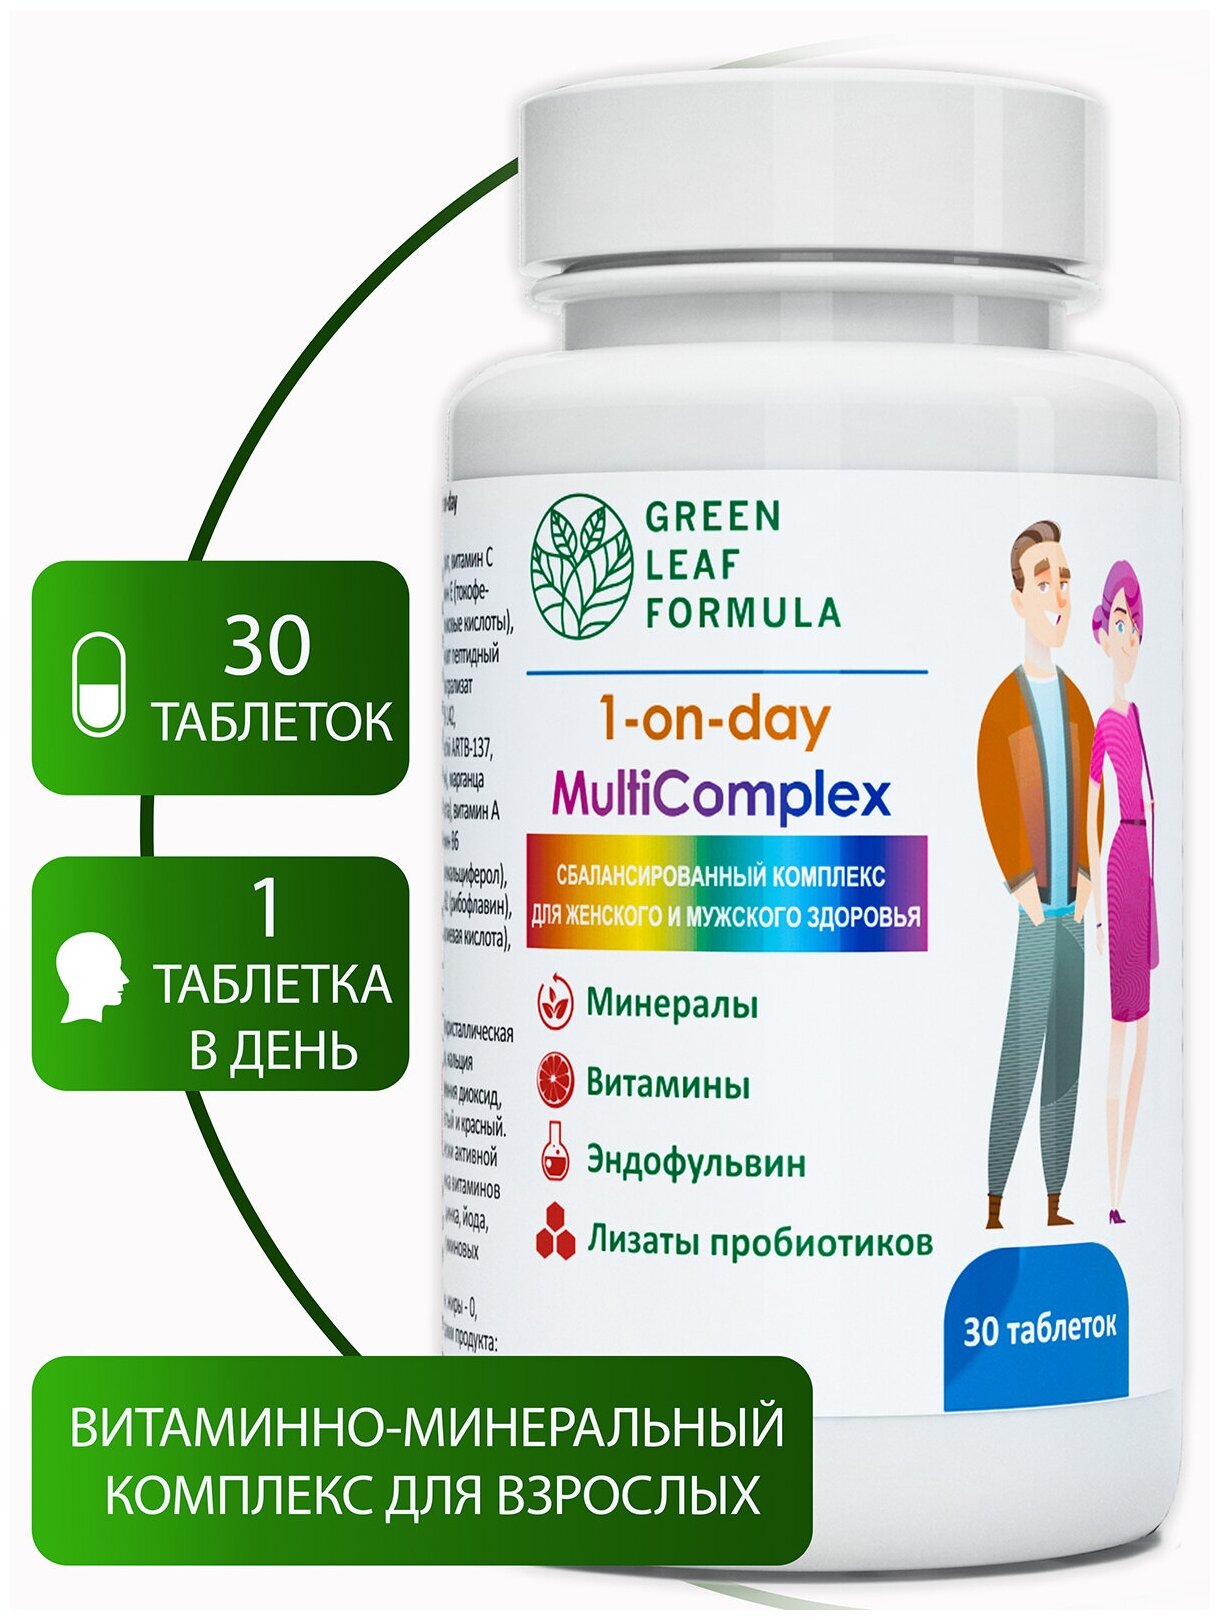 1-on-day MultiComplex Мультивитамины Витаминно-минеральный комплекс для взрослых витамины для женщин мужчин 13 витаминов+8 минералов